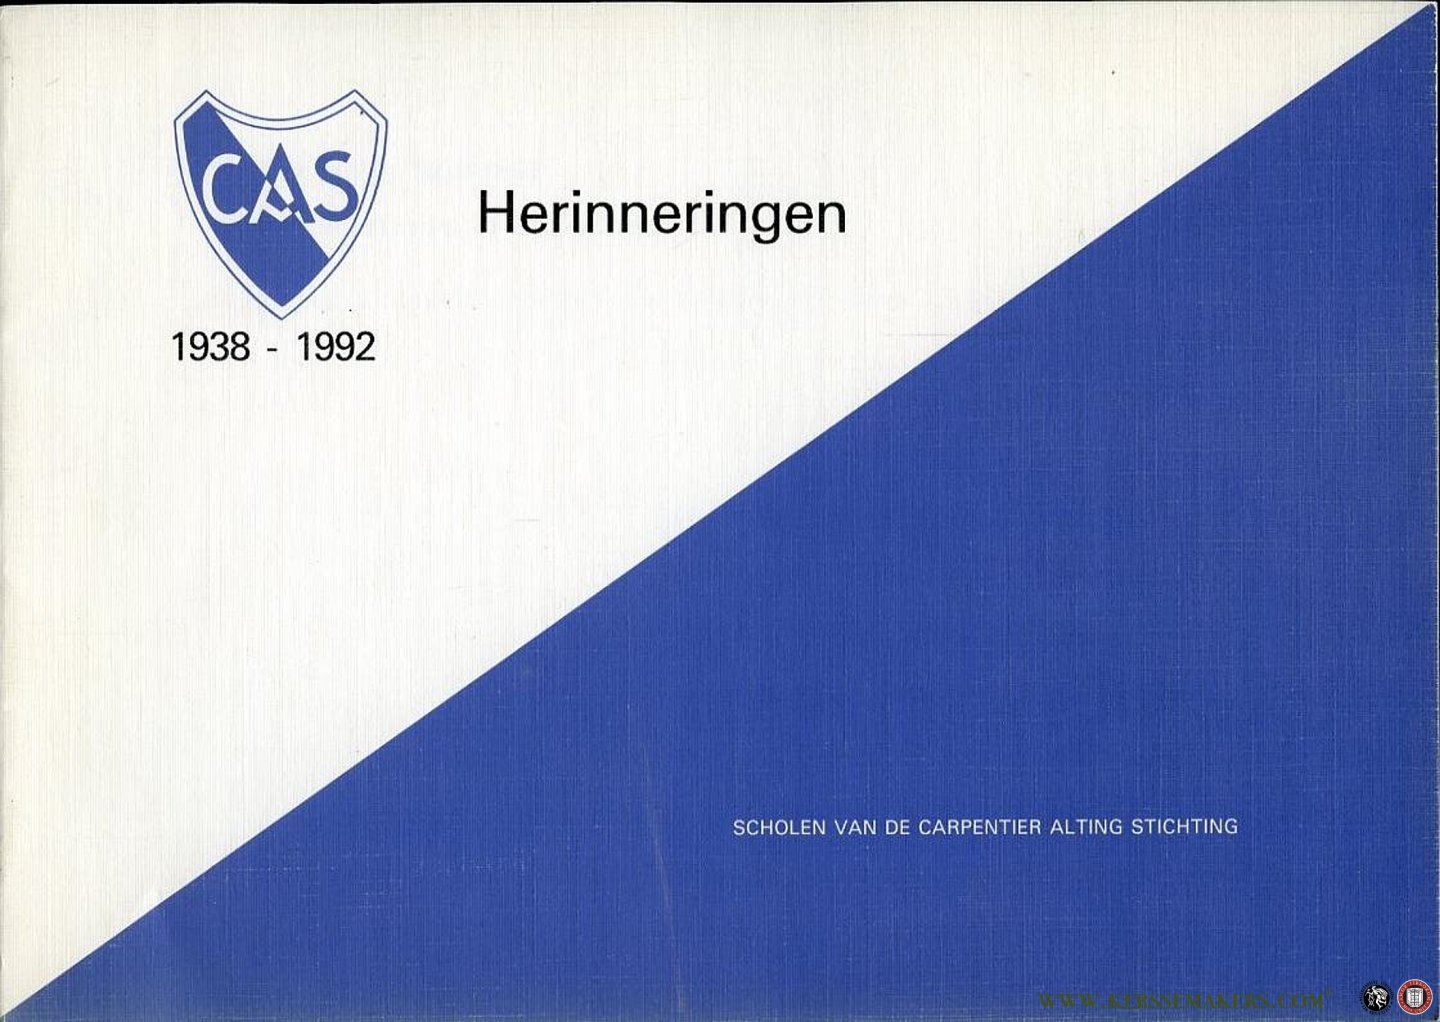 MIJERS-DAHLER, Marianne (redactie) - Terugblik (herinneringen) 1938-1992 en de reünies in Nederland  van de Scholen van de Carpentier Alting Stichting (CAS) te Batavia - Jakarta